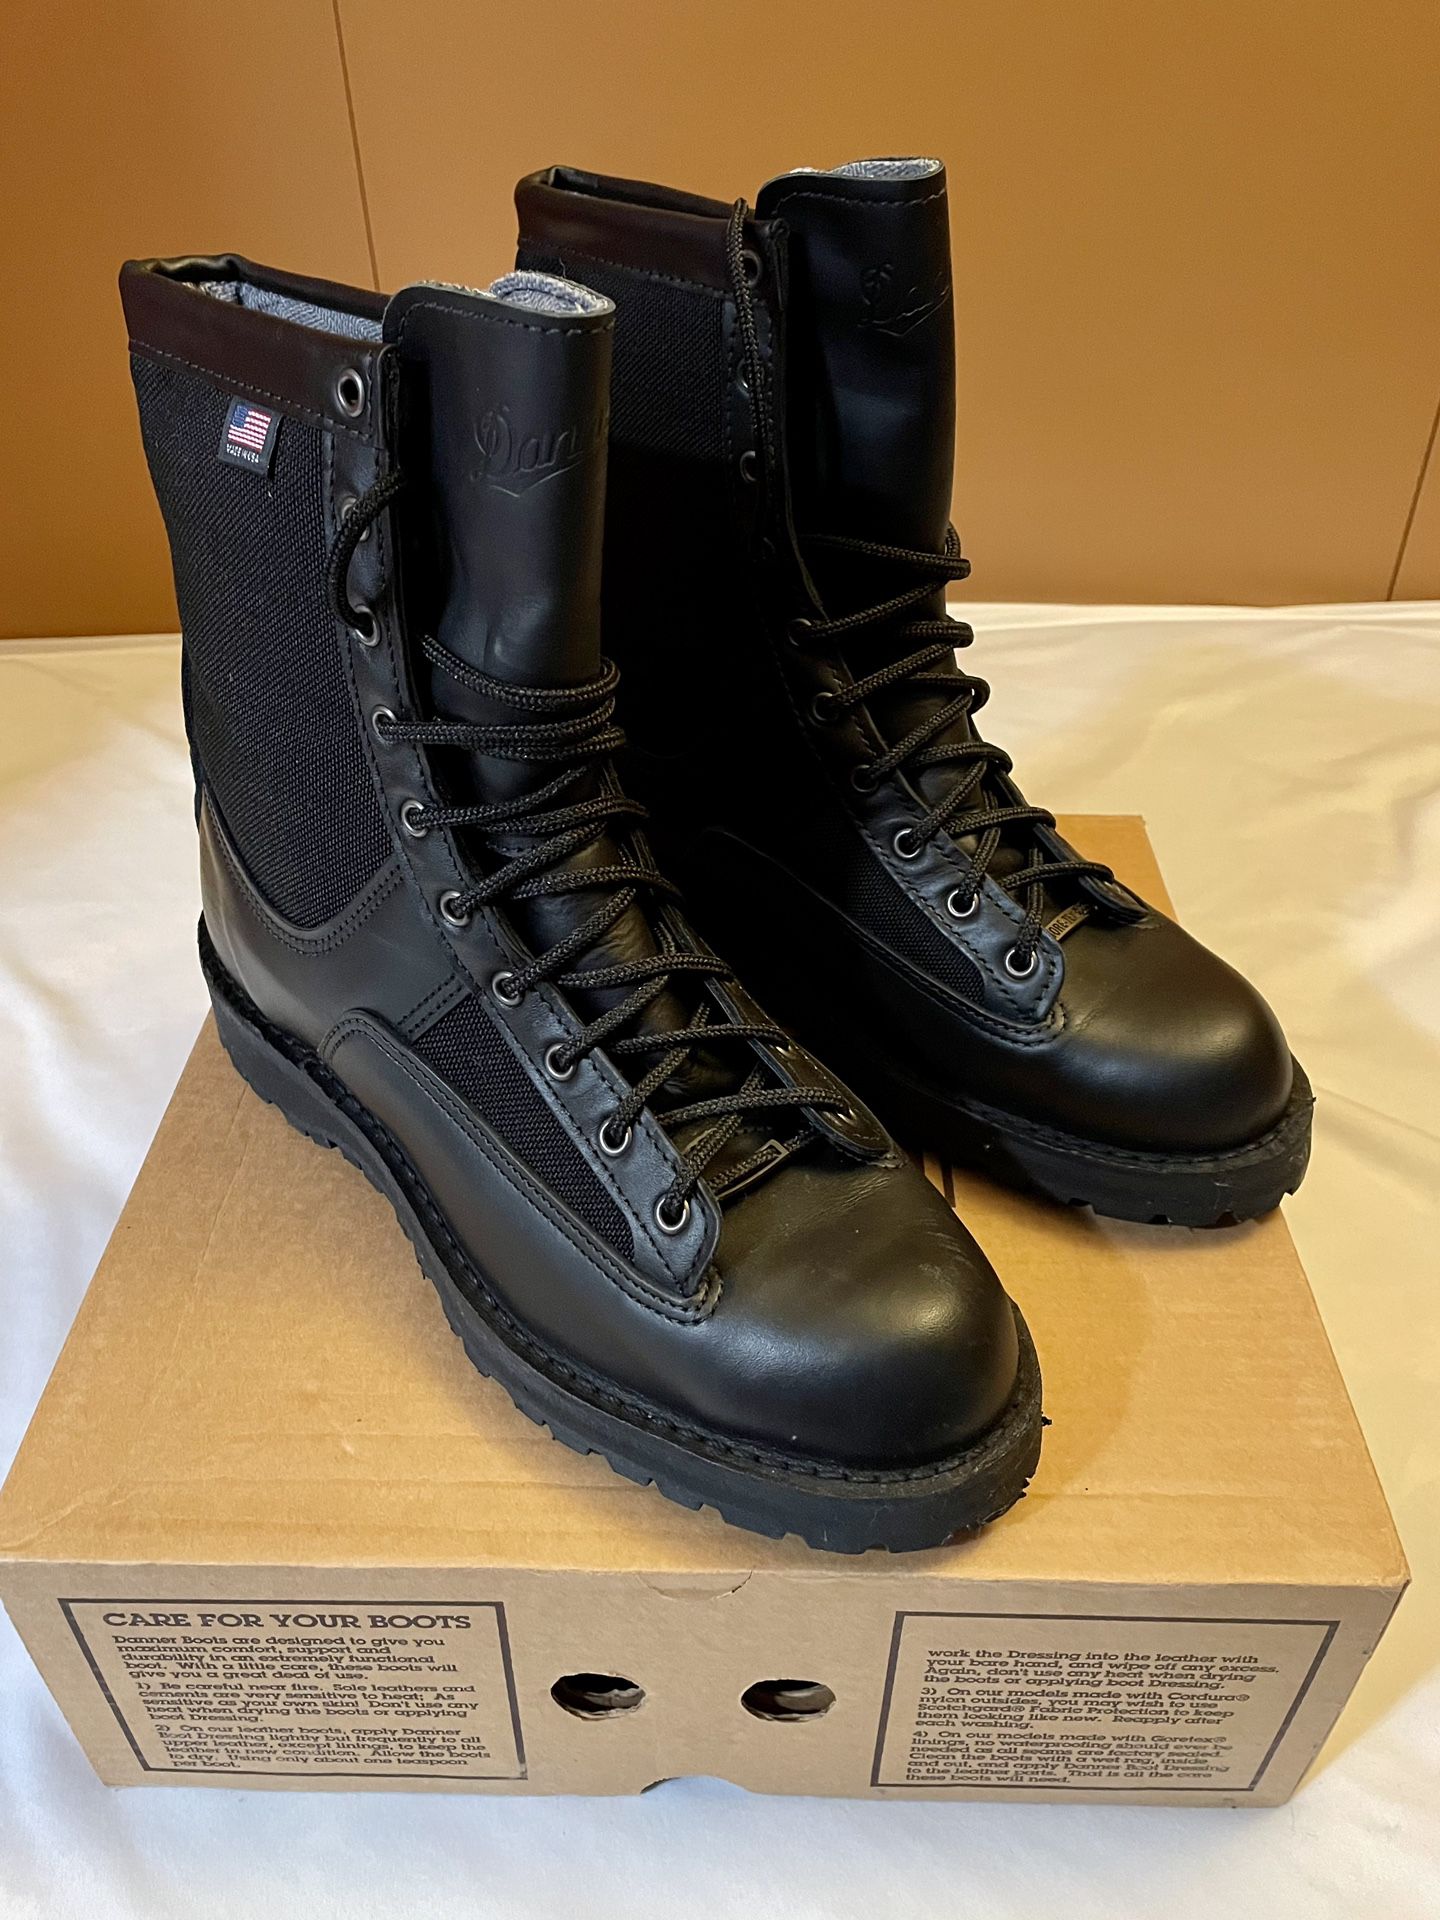 Danner Acadia Boots - Men’s 10.5